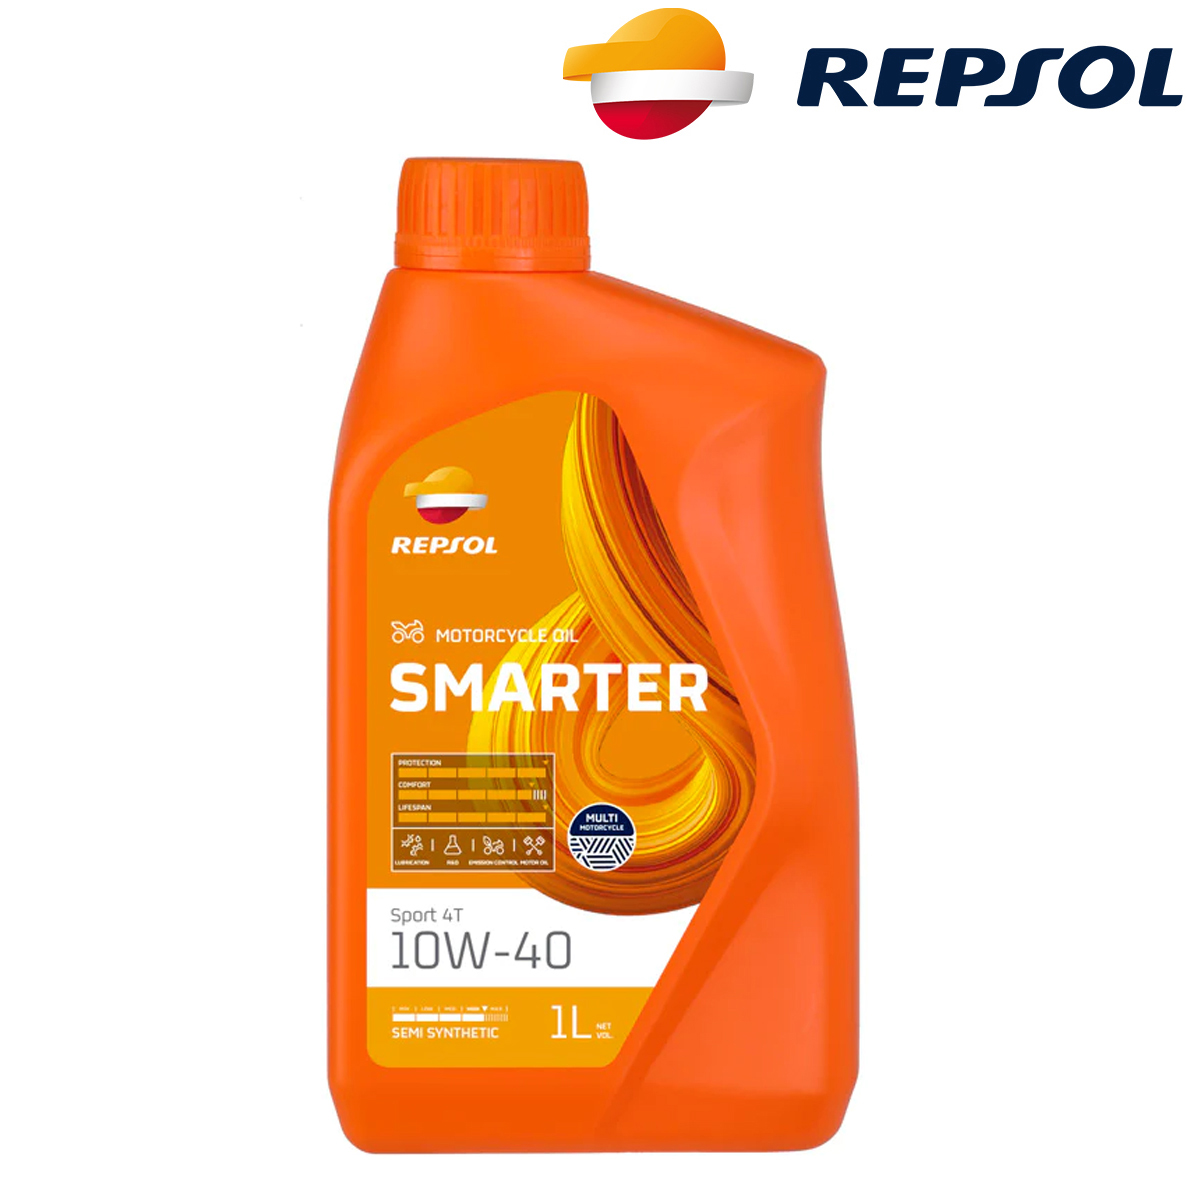 Motorno ulje - ulje za motore Repsol Smarter Sport 4T 10W40 1l RPP2065MHC